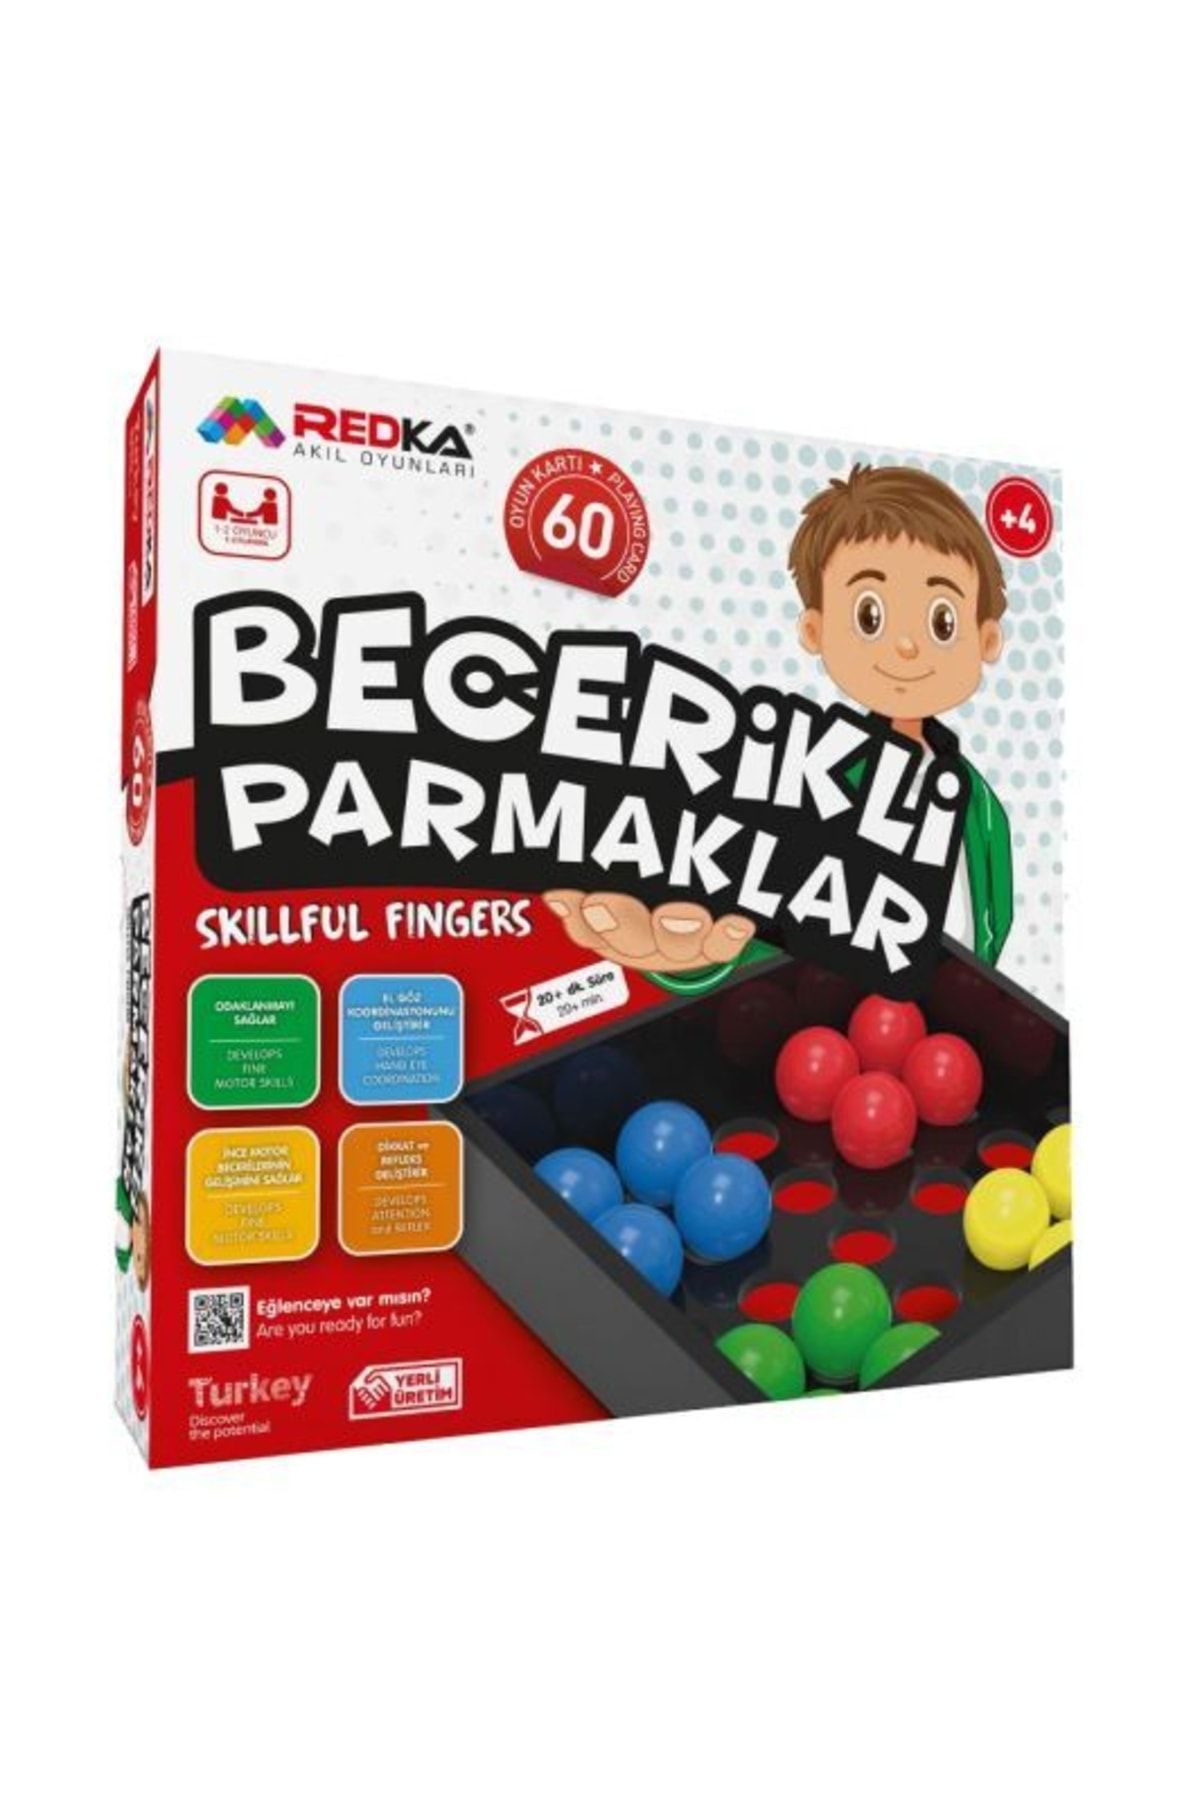 Redka Akıl Oyunları Redka Becerikli Parmaklar Oyunu Redka Akıl Zeka Oyunları